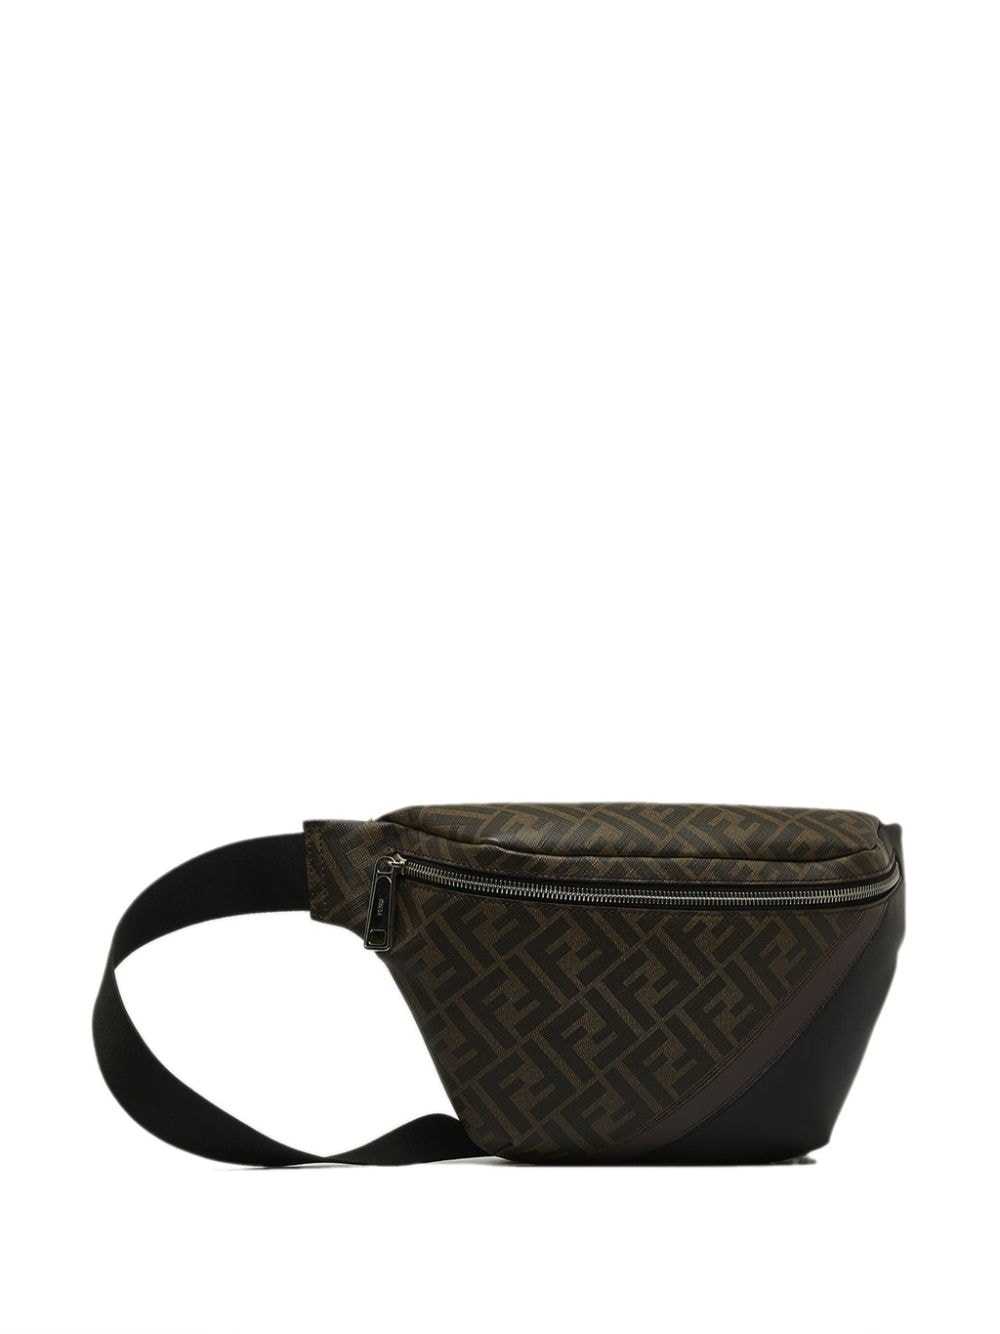 Fendi Pre-Owned 2010-2022 Zucca belt bag - Black - image 3